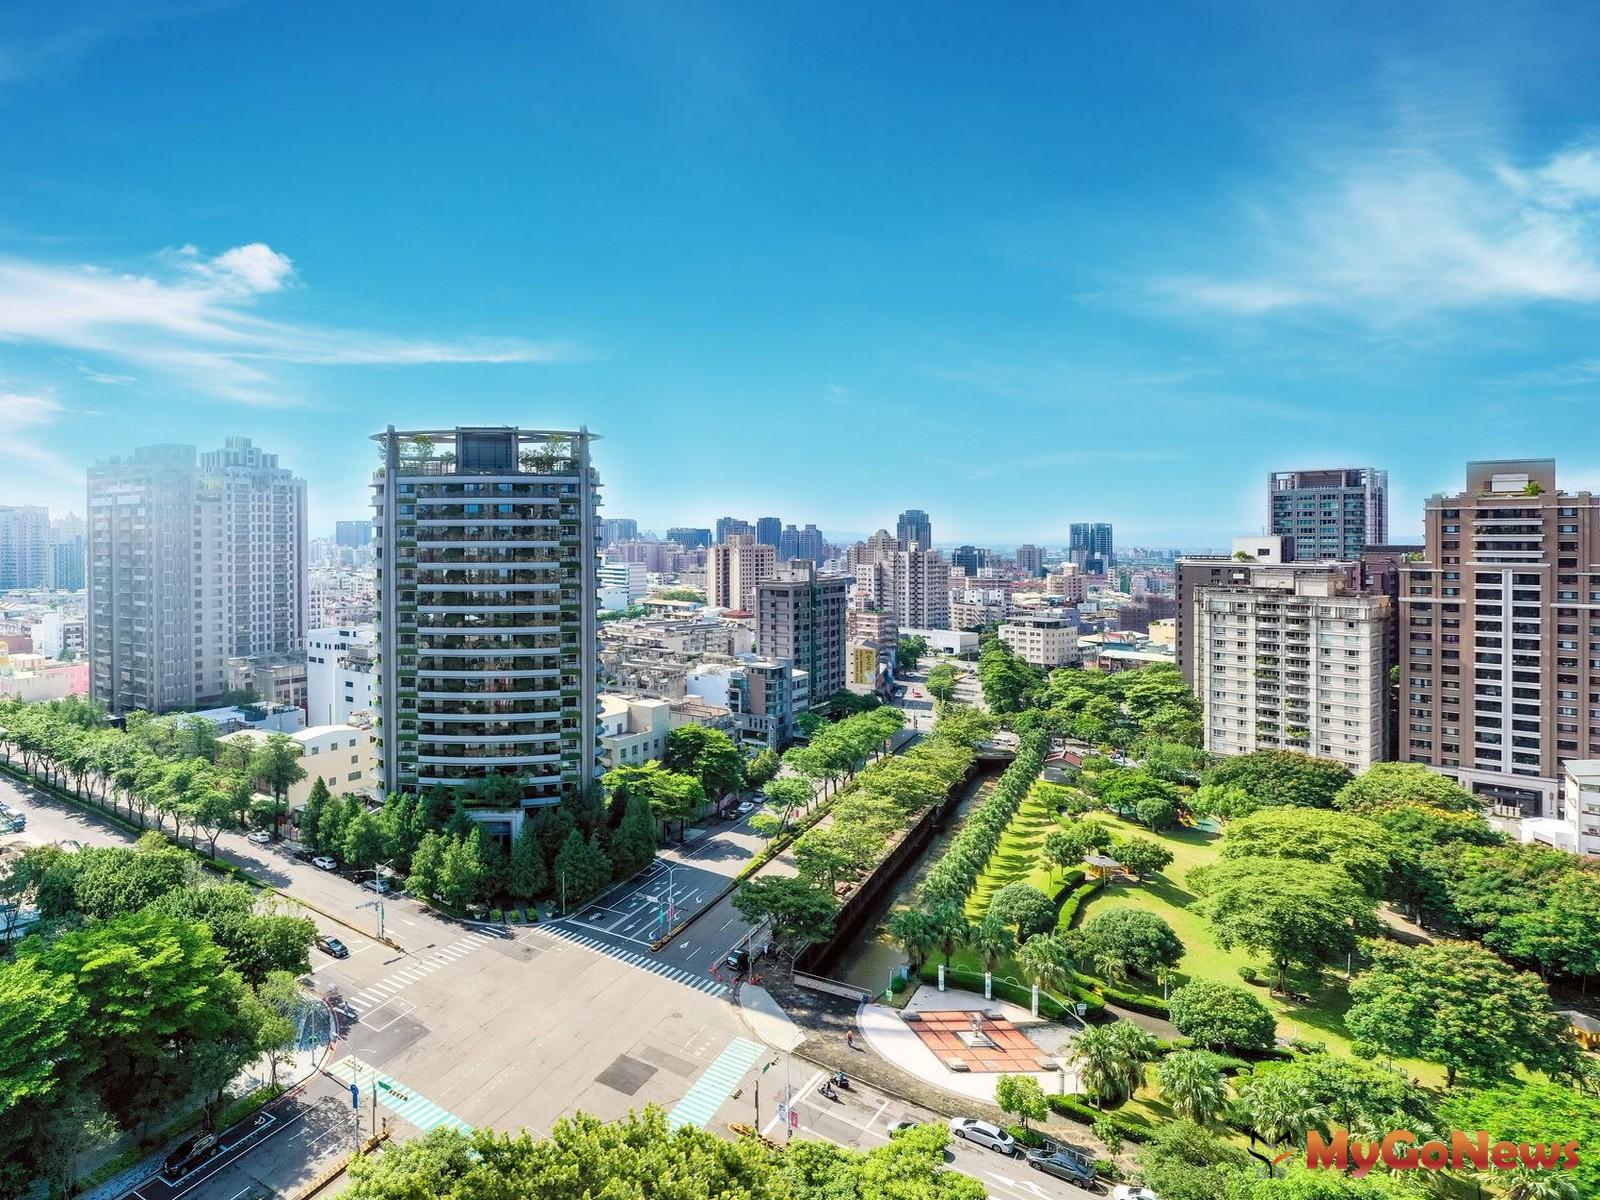 立足低密度、高綠覆的南七期核心的「慶仁林境」，被視為台中最具質感與話題的綠建築之一。 MyGoNews房地產新聞 市場快訊